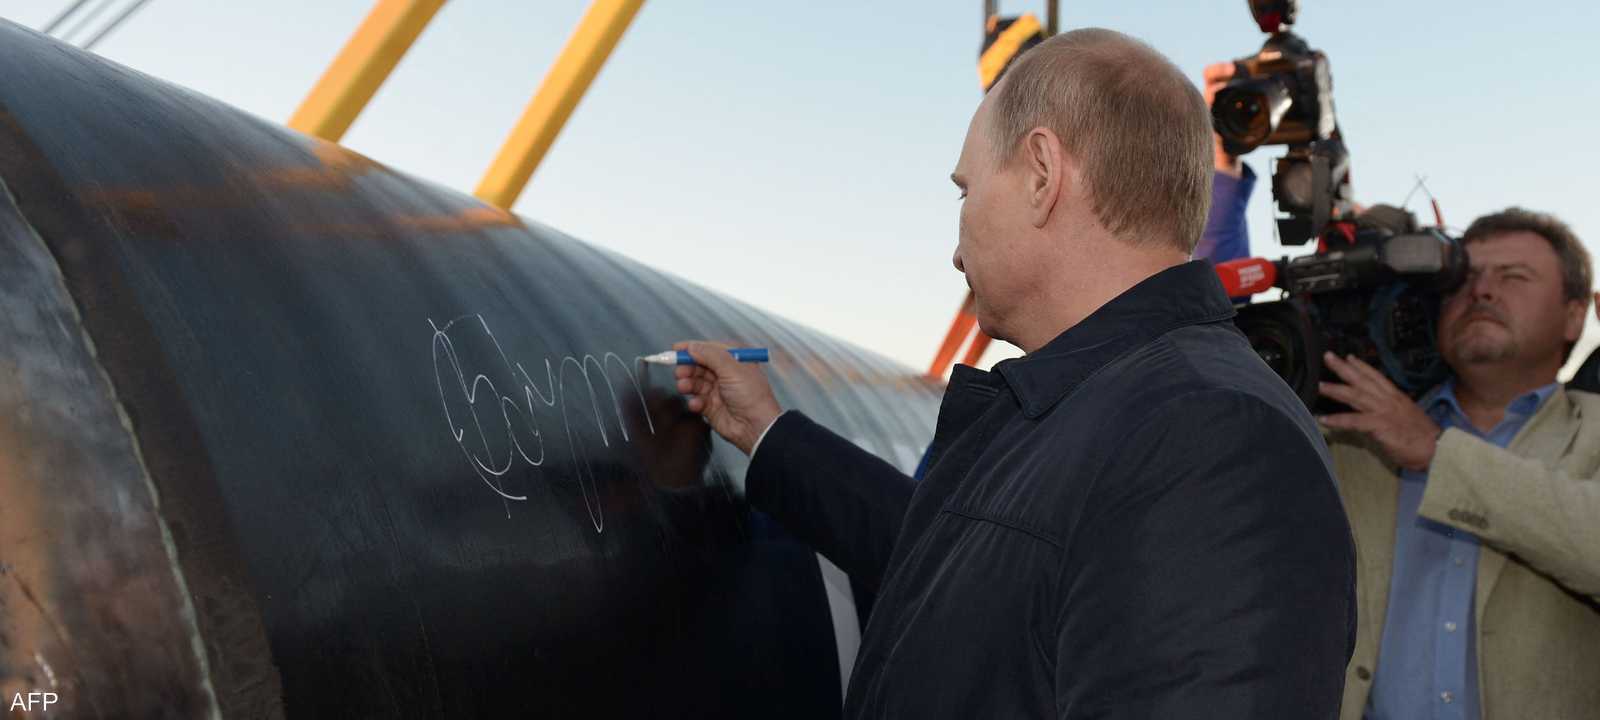 أرشيفية.. الرئيس الروسي بوتن يوقع على خط أنابيب قوة سيبيريا